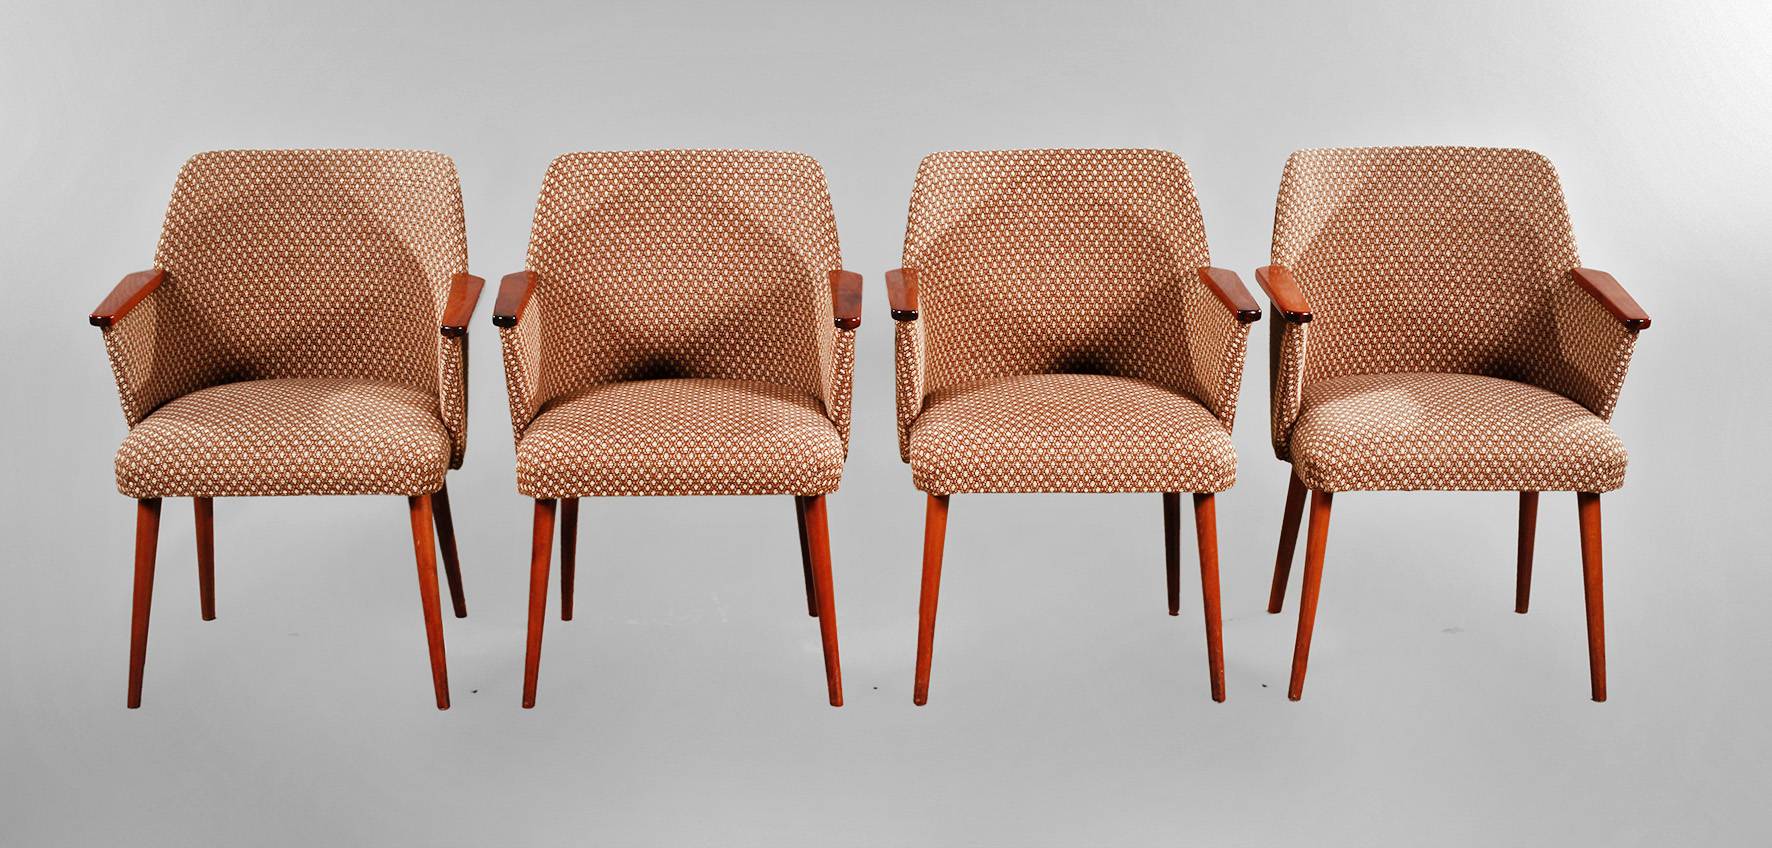 Vier Sessel DDR Design